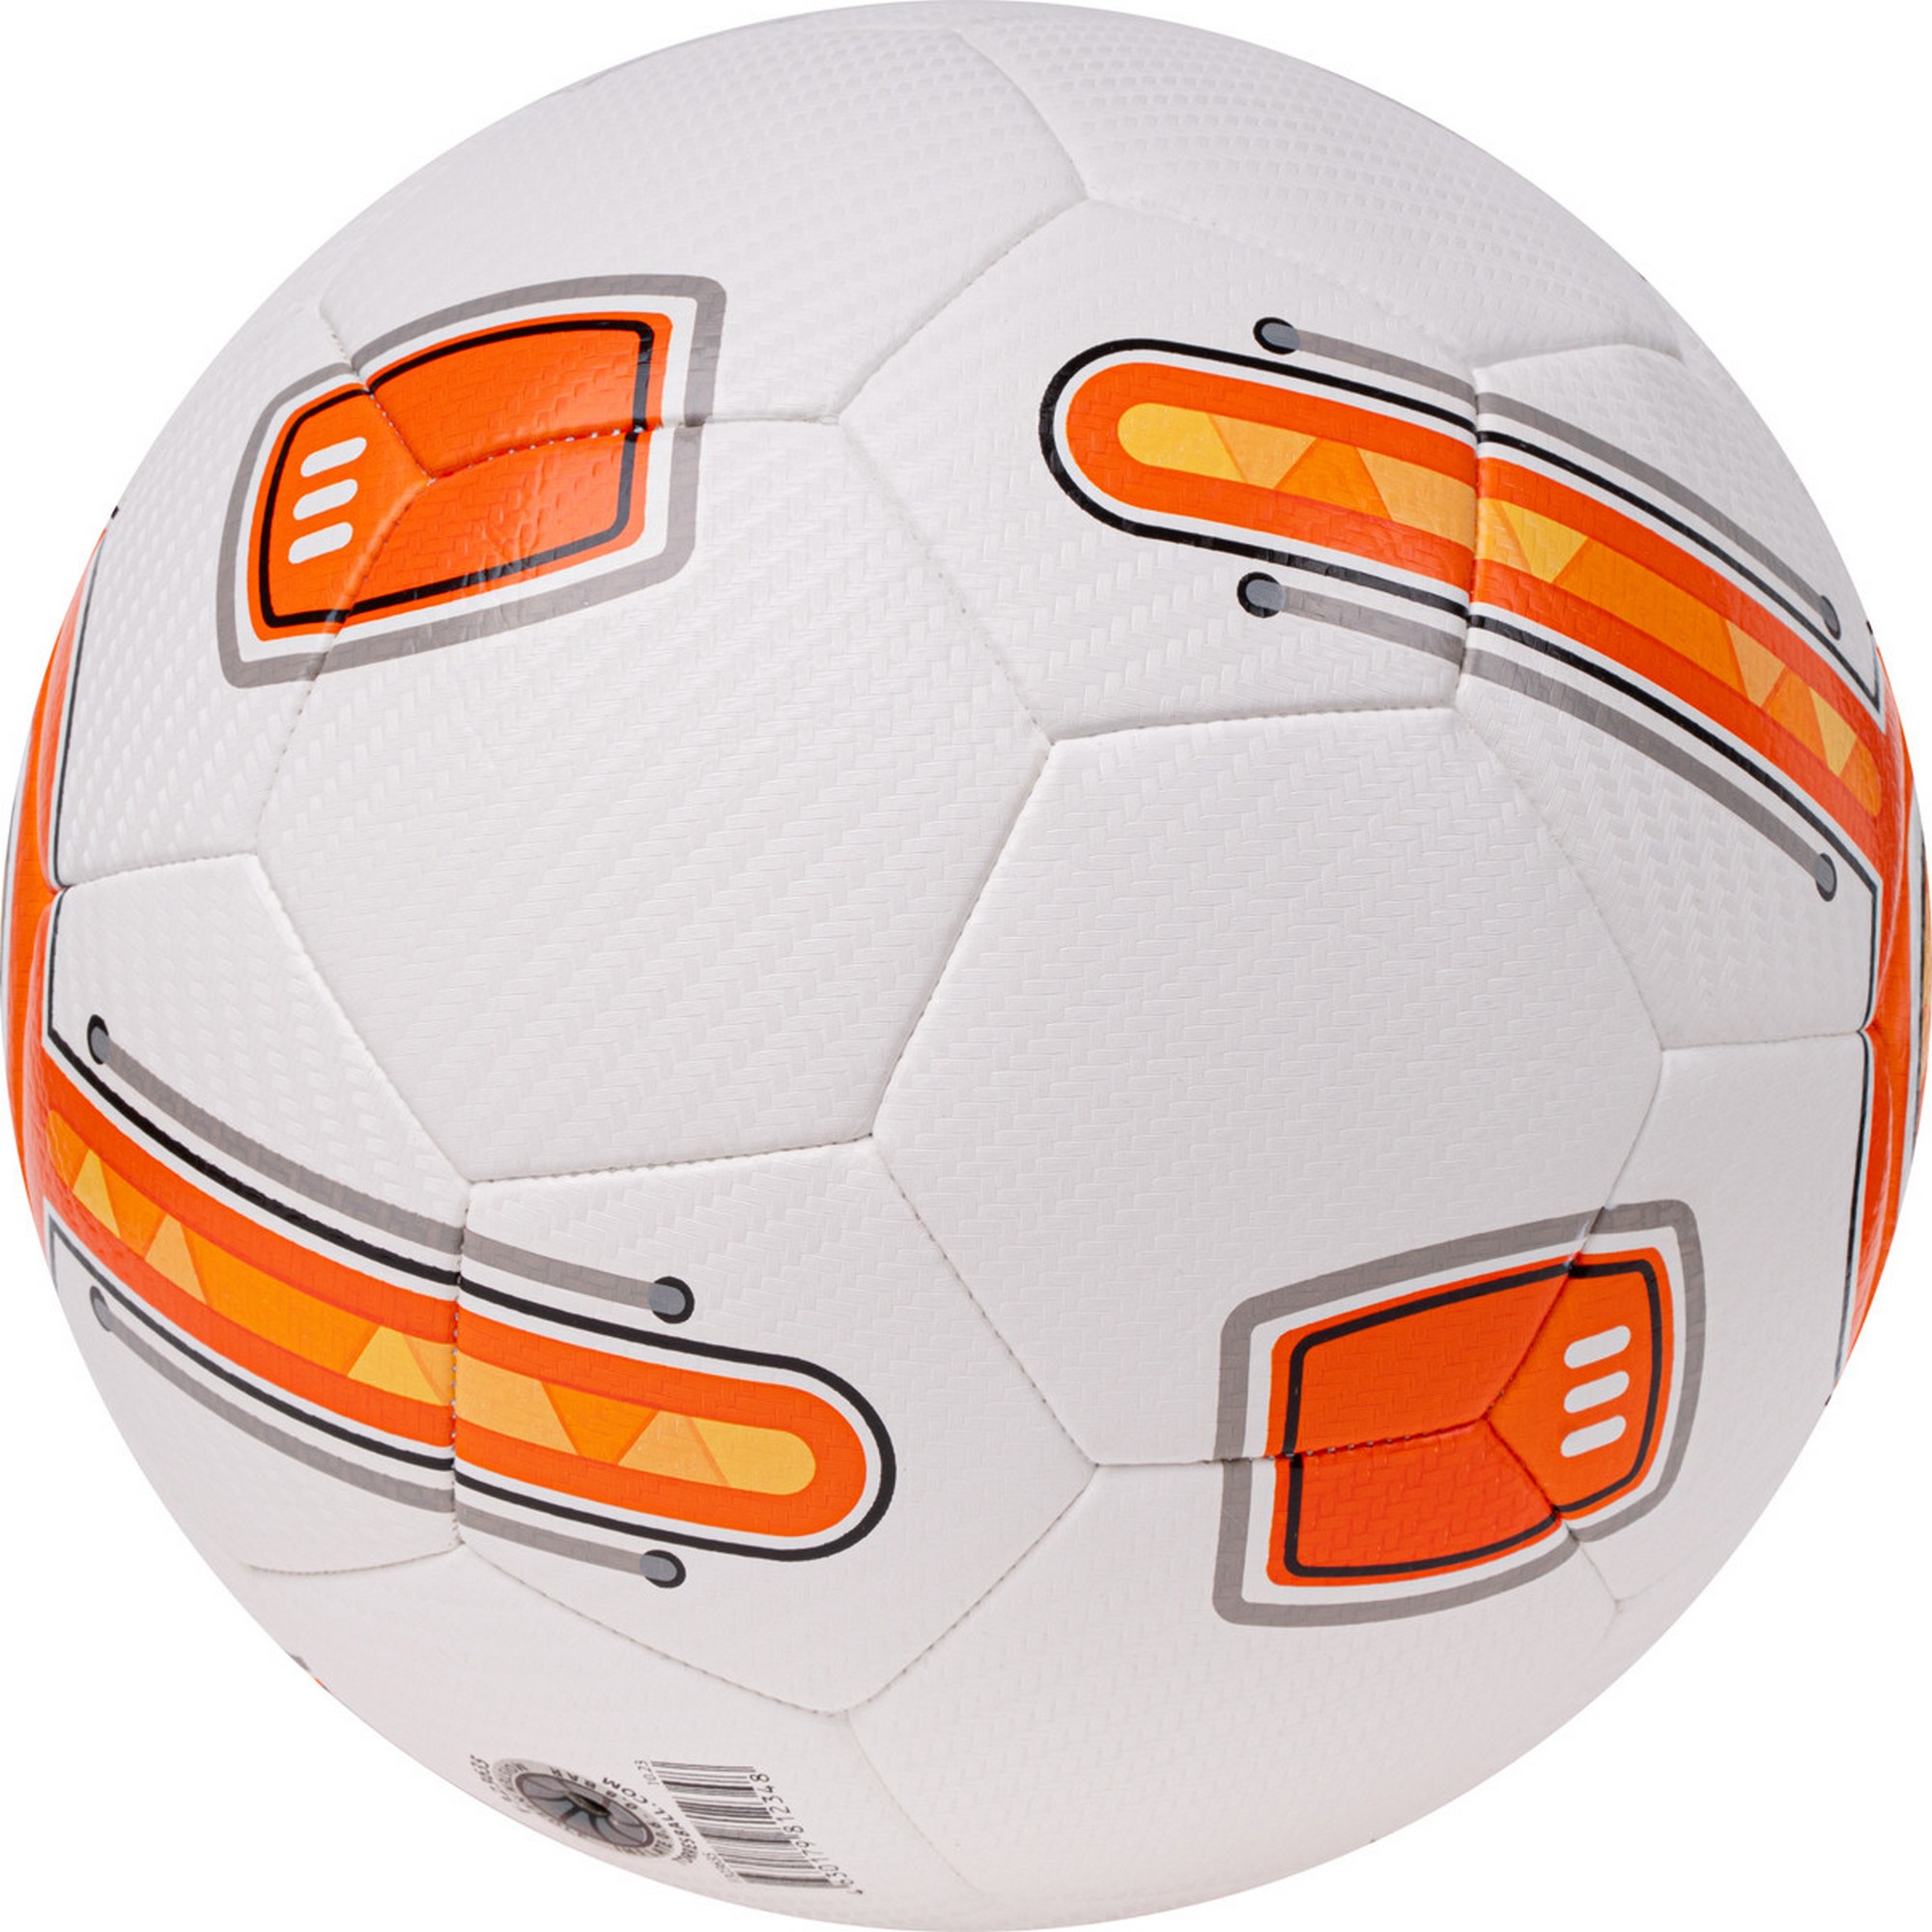 Мяч футбольный Torres BM 700 F323634 р.4 2000_2000